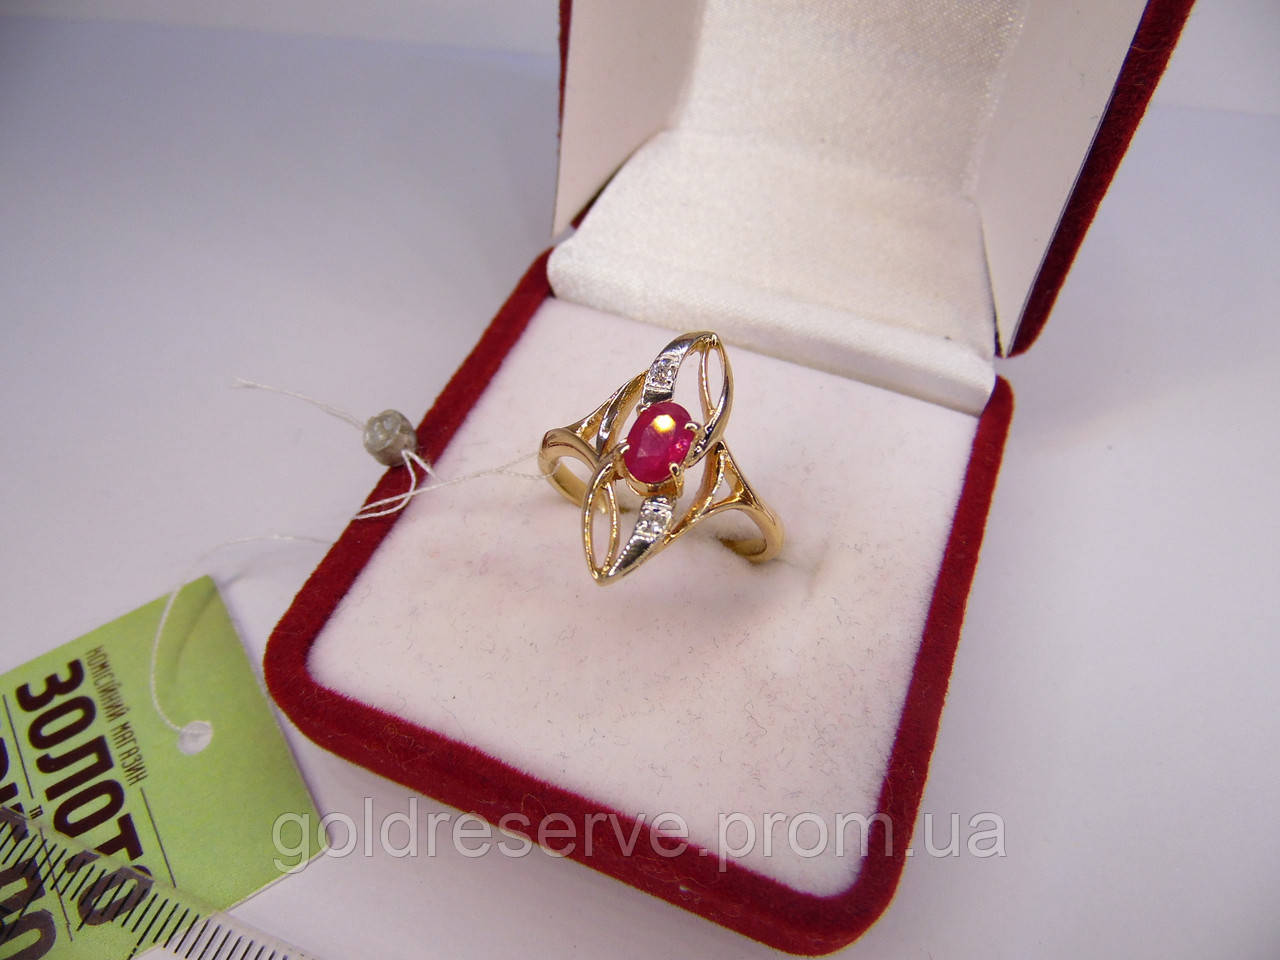 Золоте жіноче кільце з діамантом і рубіном. Розмір 17,9